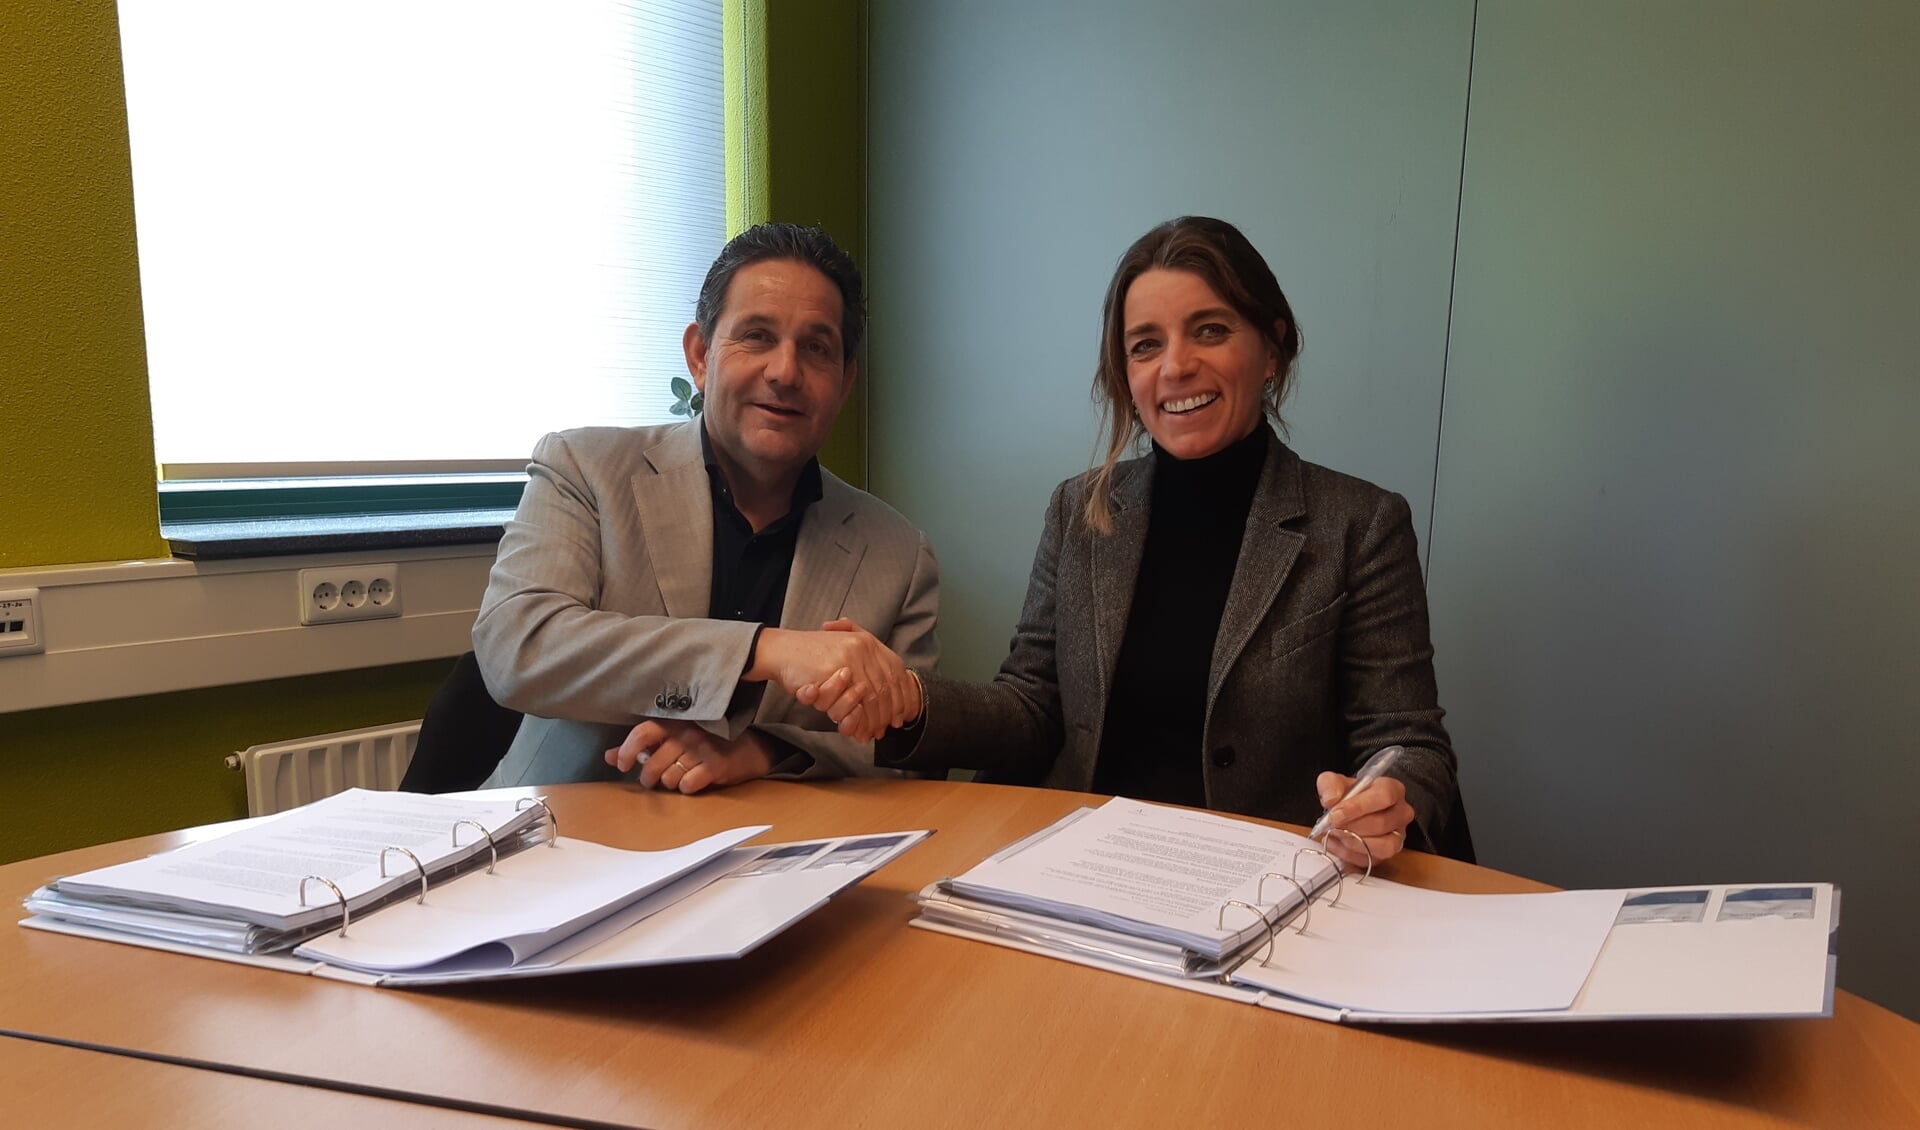 Ondertekening van de bouwovereenkomst voor een nieuwe revalidatielocatie in Houten